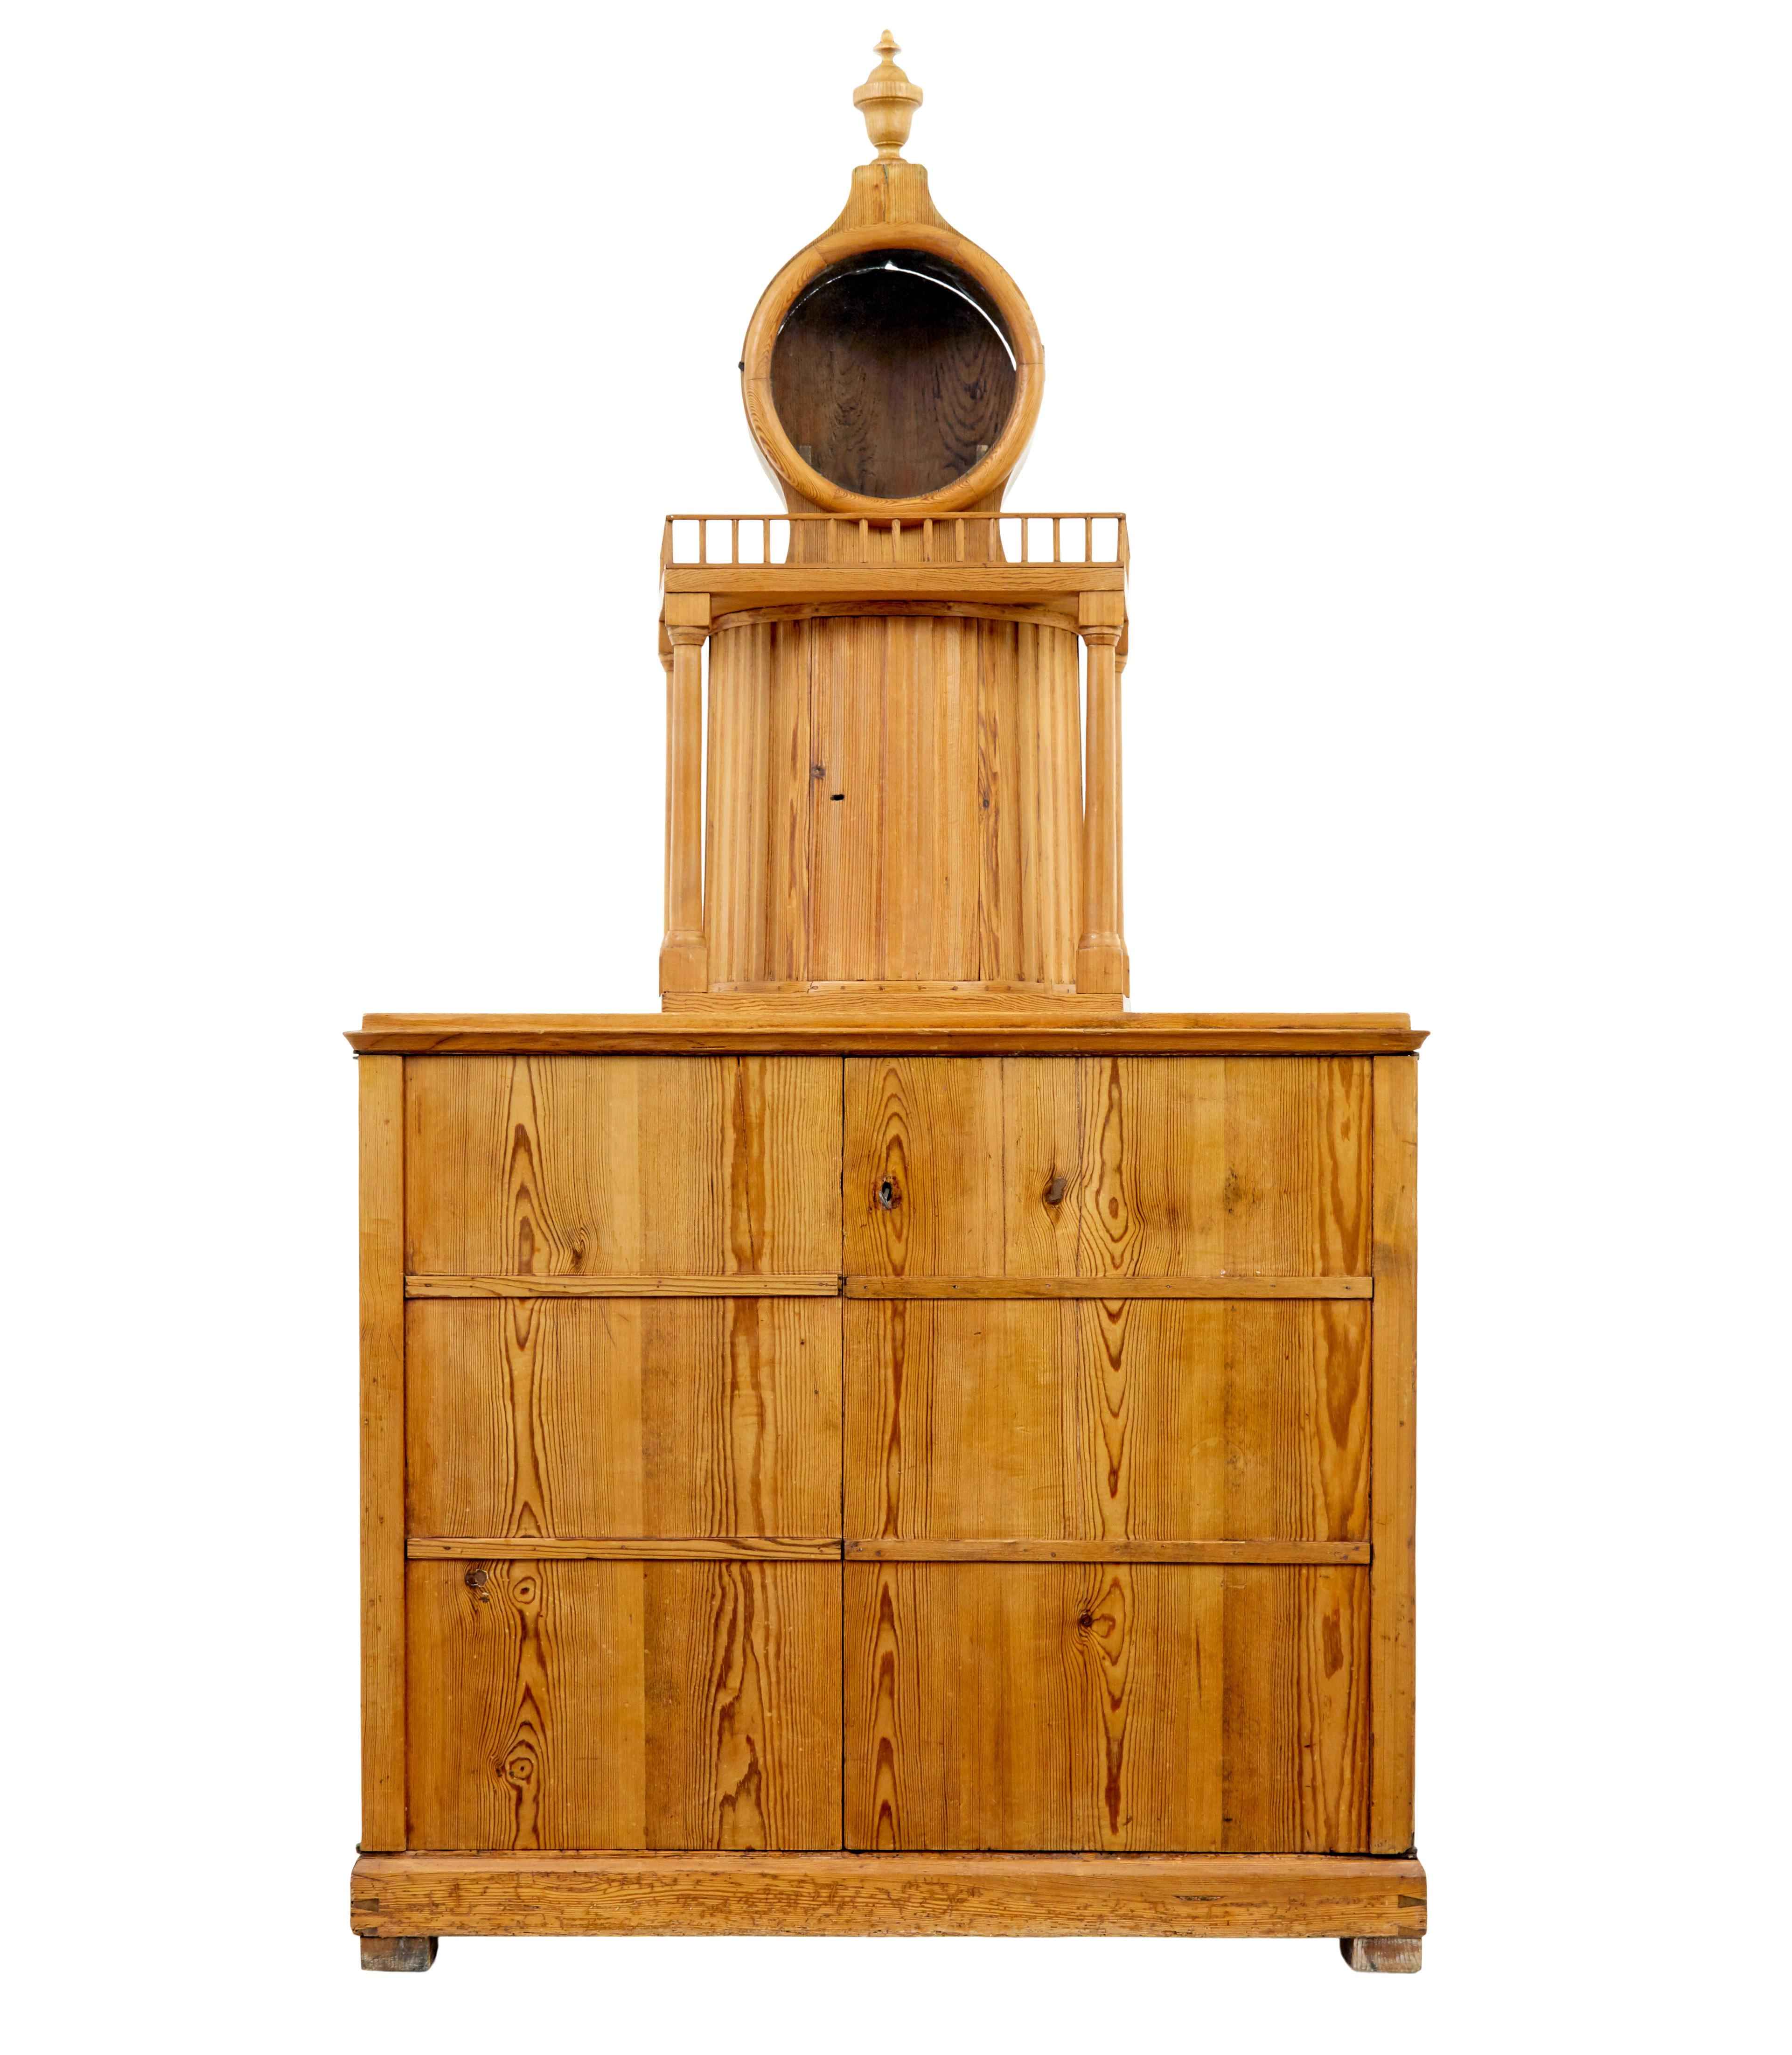 Küchenschrank aus schwedischer Kiefer, 19. Jahrhundert, um 1880.

Seltener Schrank aus schwedischem Kiefernholz mit einem Uhrenturm auf der Oberseite.   Ziffernblattfassung mit abnehmbarer Haube, die Ketten und Gewichte und das Pendel würden in den